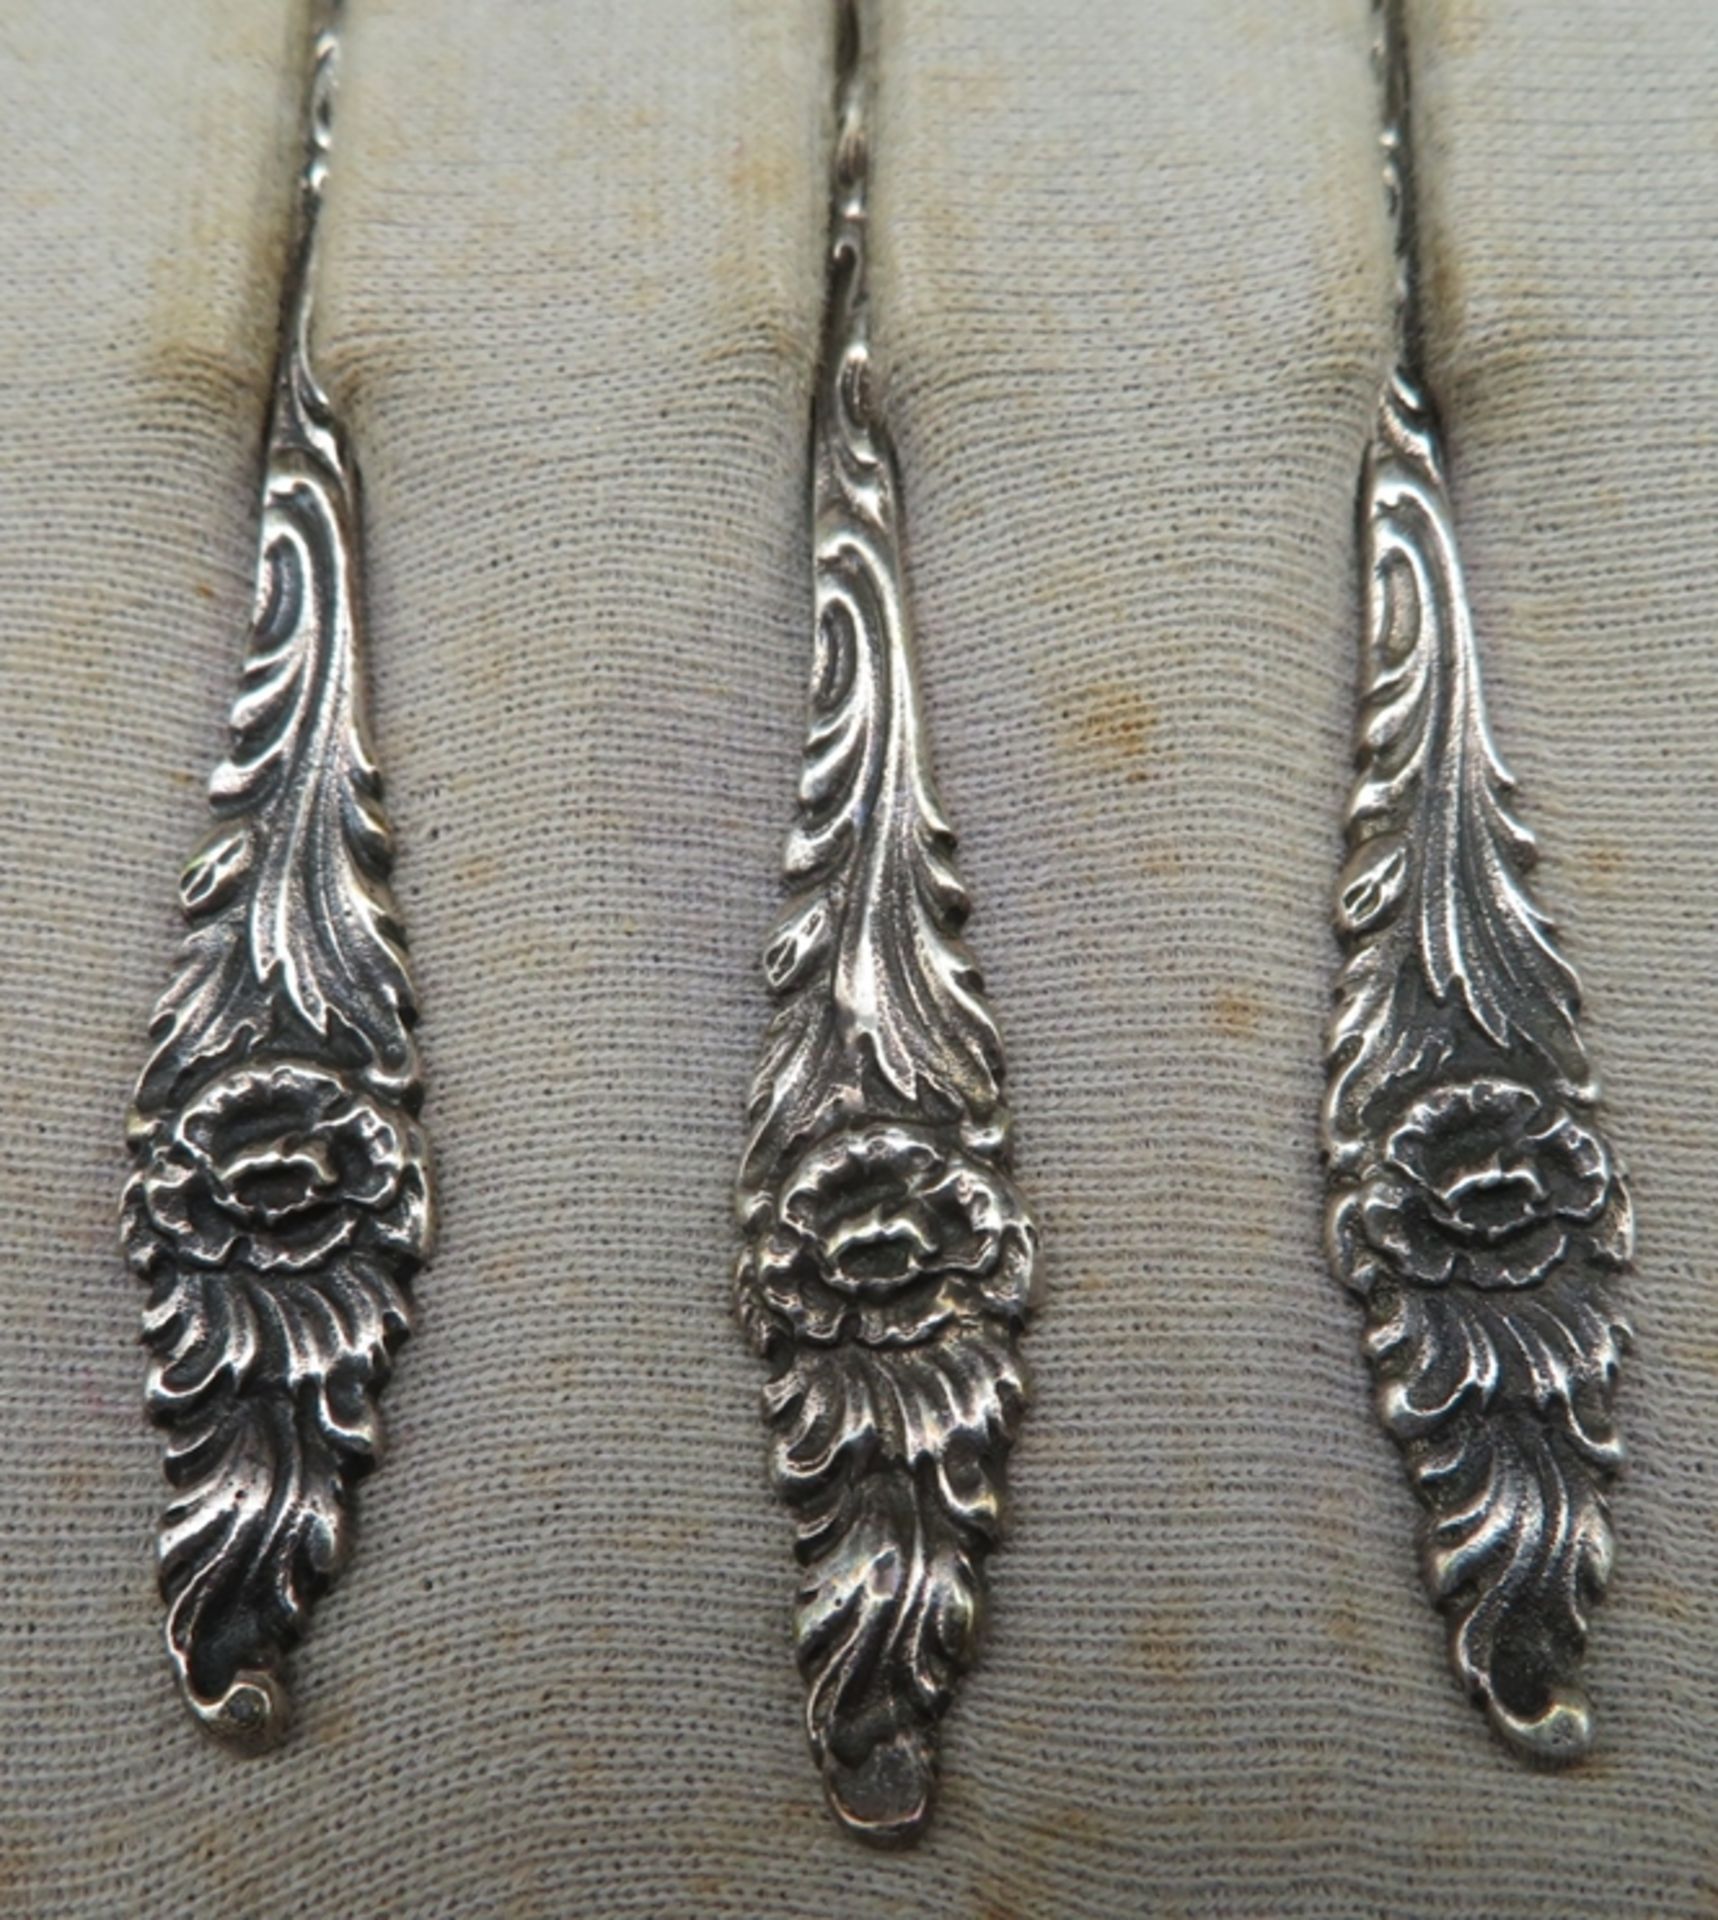 12 Teelöffel, Silber 835/000, punziert, 97,3 g, Stielenden mit reliefierten Blumenmotiven, in Schat - Image 2 of 2